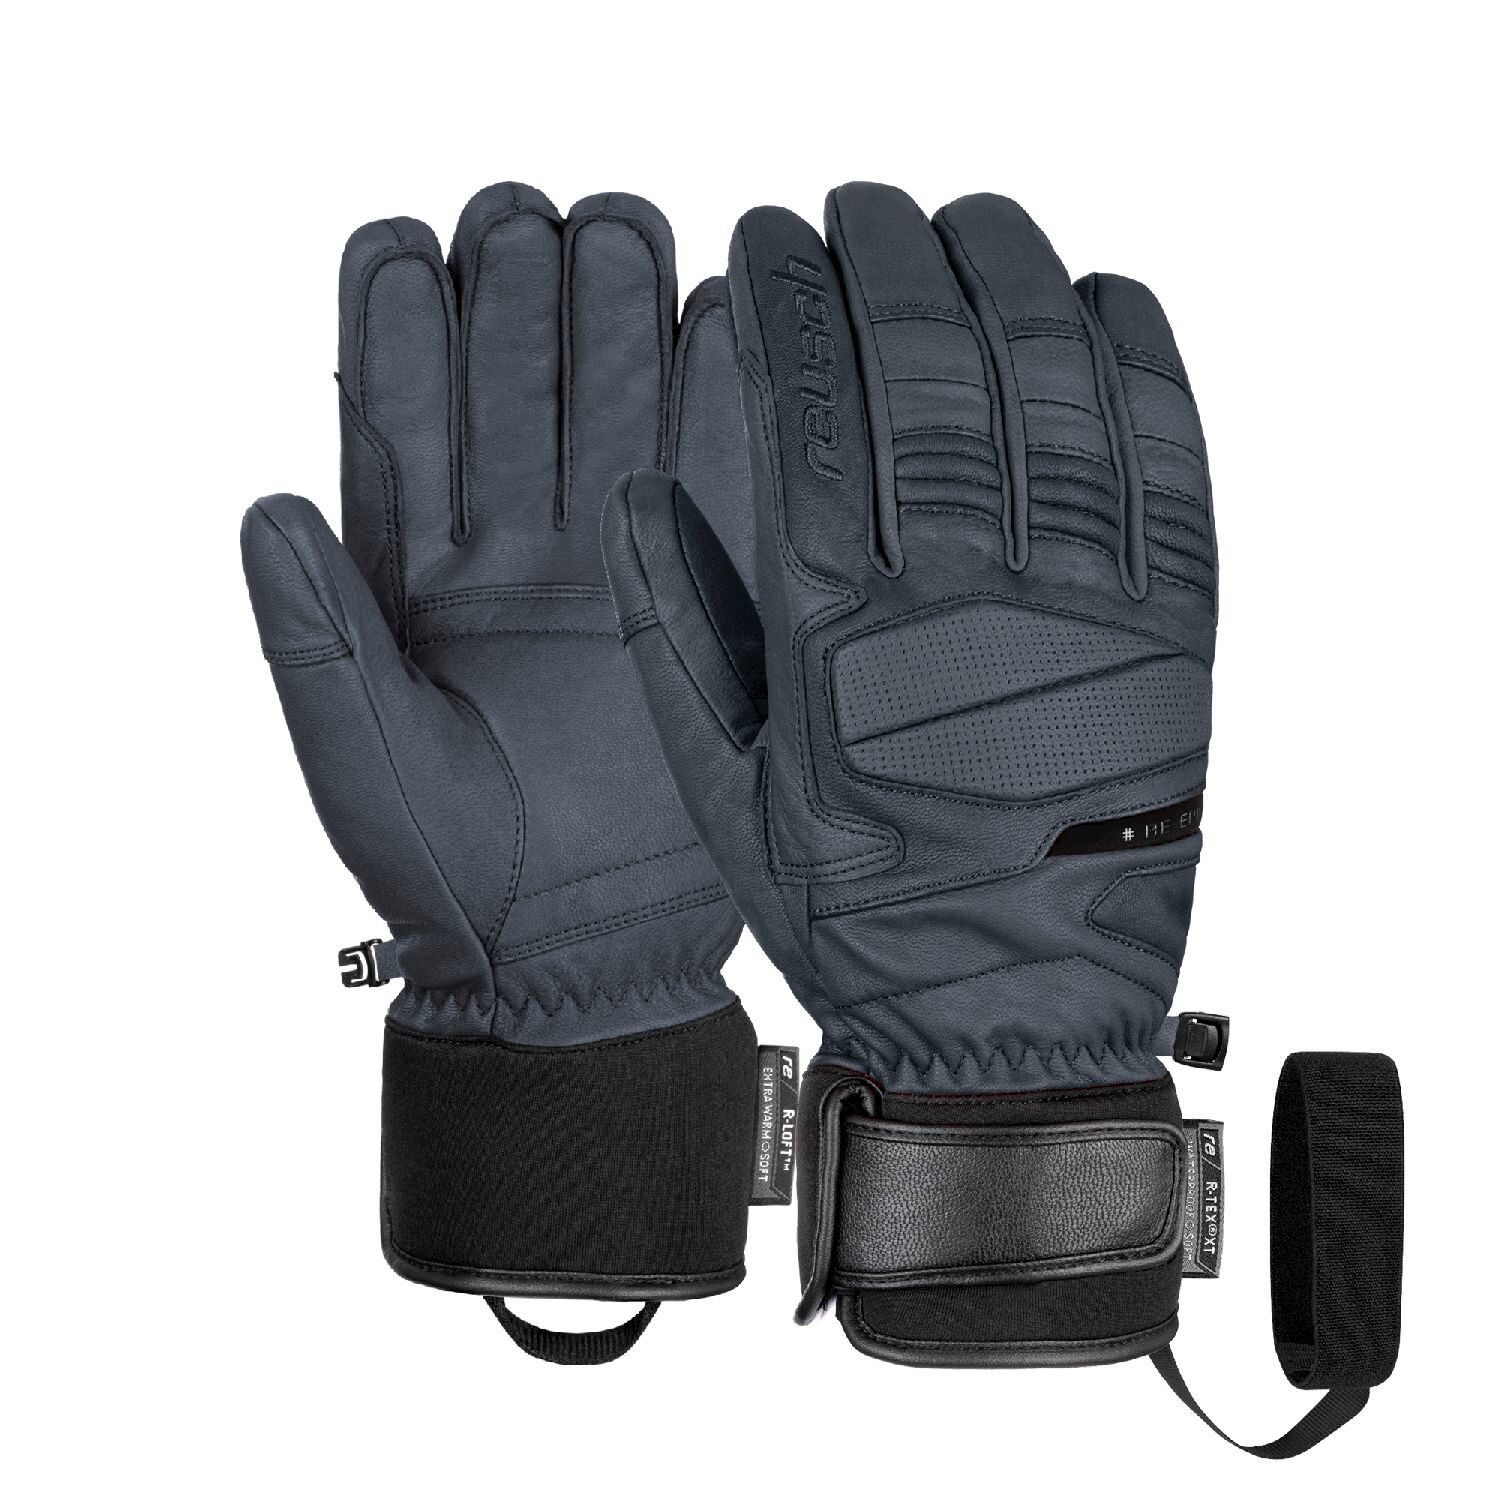 Reusch Be Epic R-TEX XT - Ski gloves - Men's